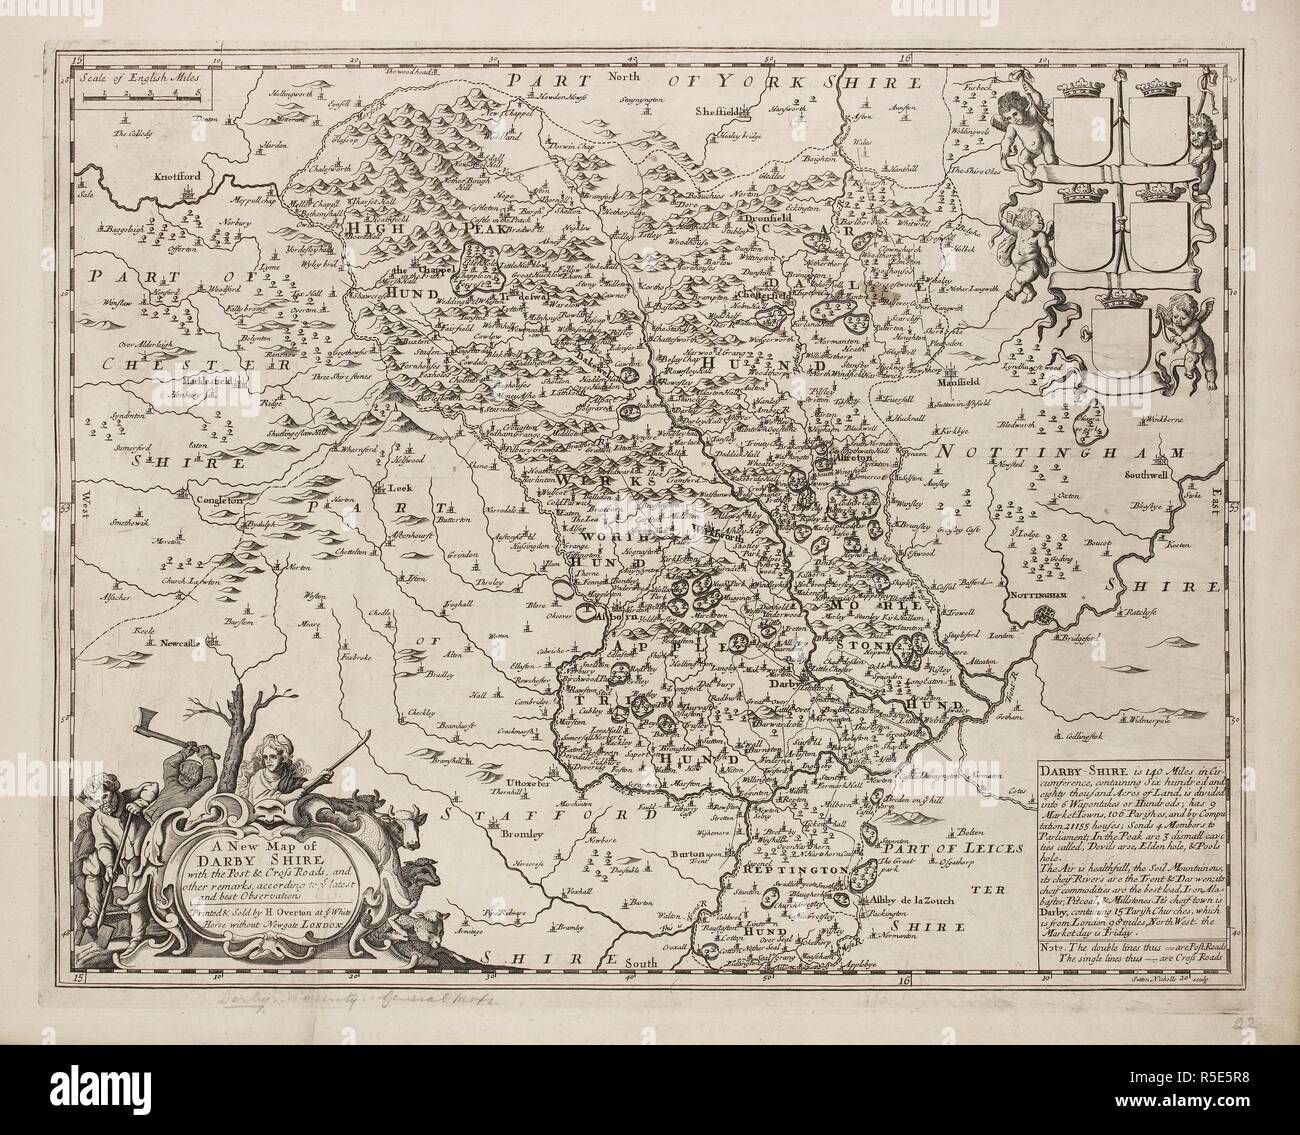 Mapa del país de Derbyshire. . Una colección de 37 mapas de los condados de Inglaterra. Londres. H. Overton, 1714. Una colección de 37 mapas de los condados de Inglaterra, siendo las reimpresiones, de J. Speedâ€™s mapas, por Henry Overton, junto con los de P. Stent Reimpreso por John Overton, y mapas de Derbyshire y Yorkshire grabado por S. Nicholls. Fuente: Maps.145.c.9 22. Idioma: Inglés. Foto de stock